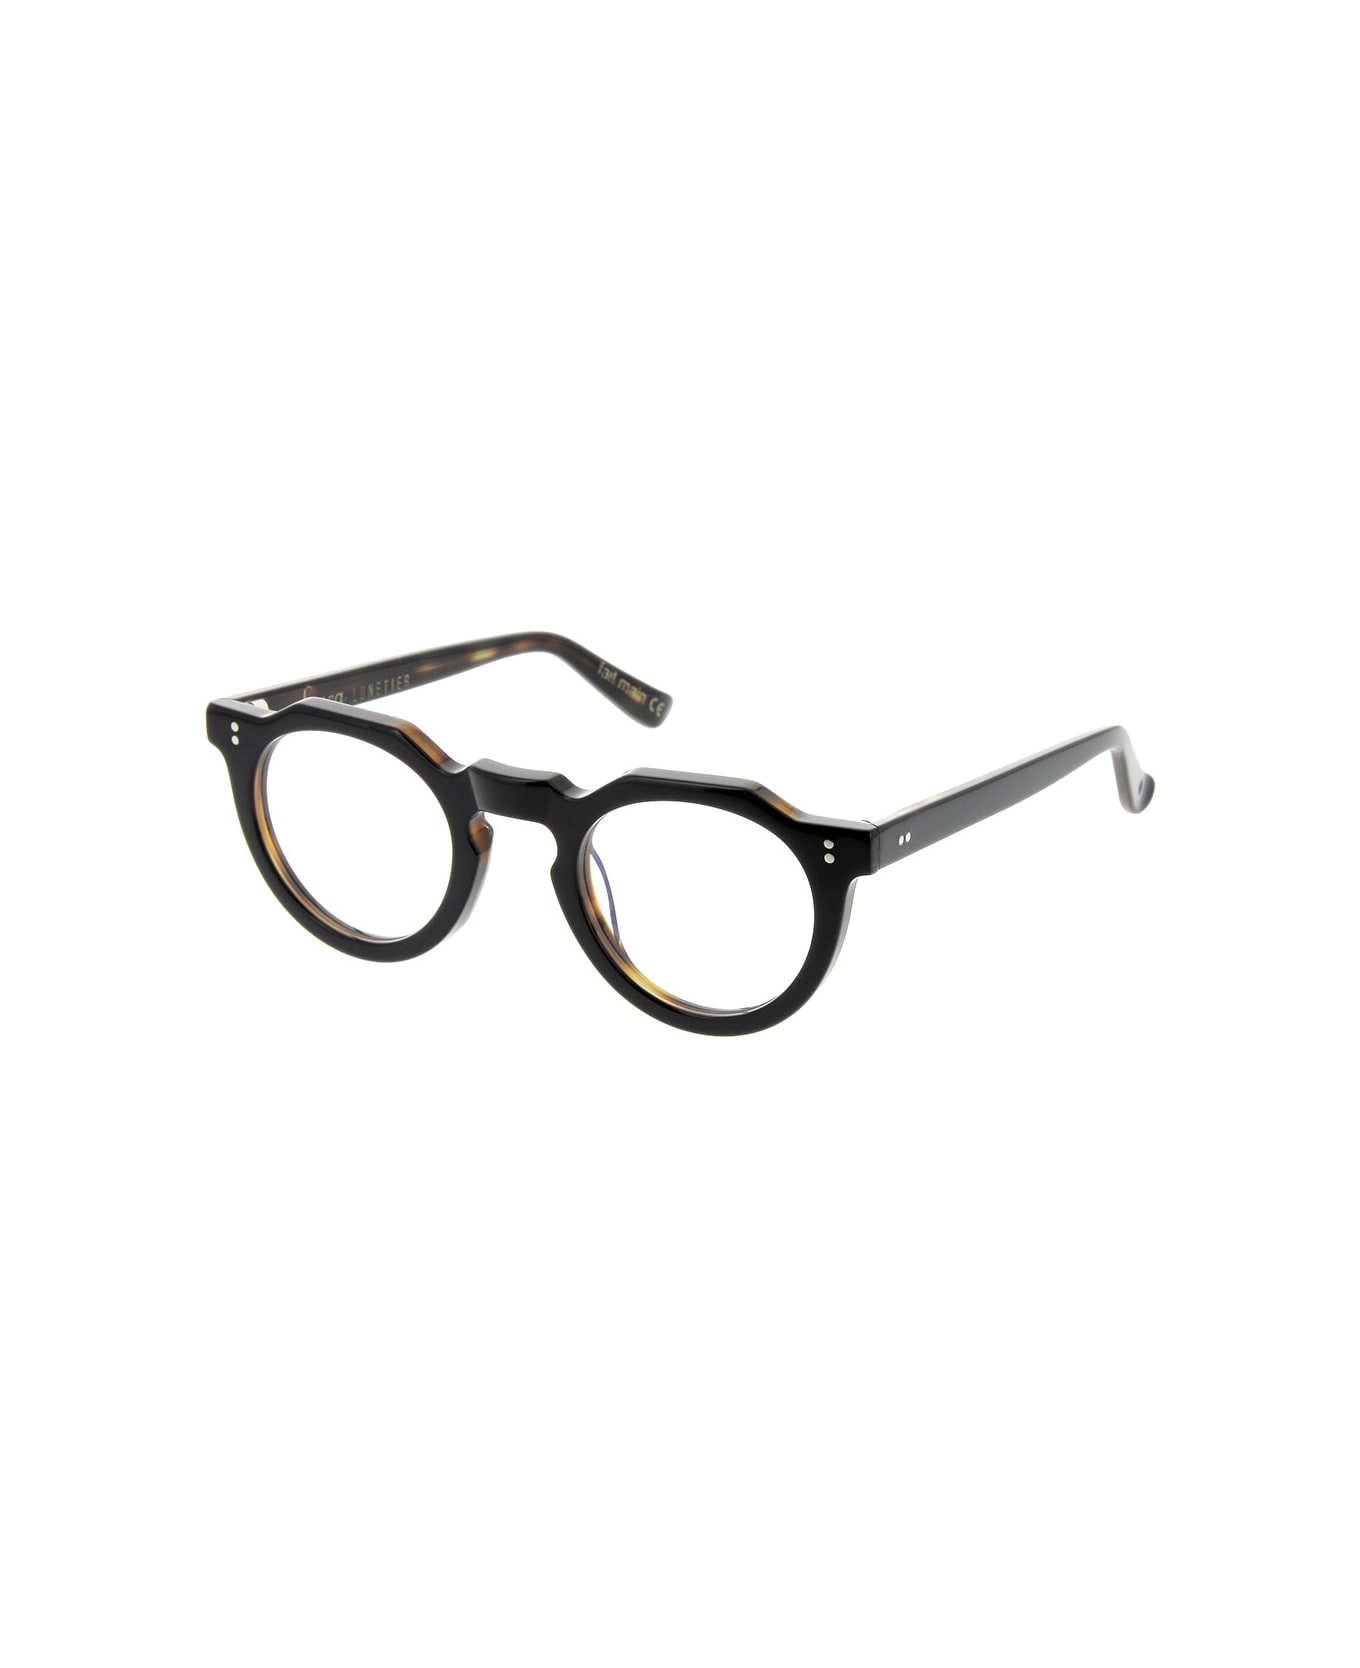 Lesca Picas XL K5 Glasses - Nero e tartaruga アイウェア